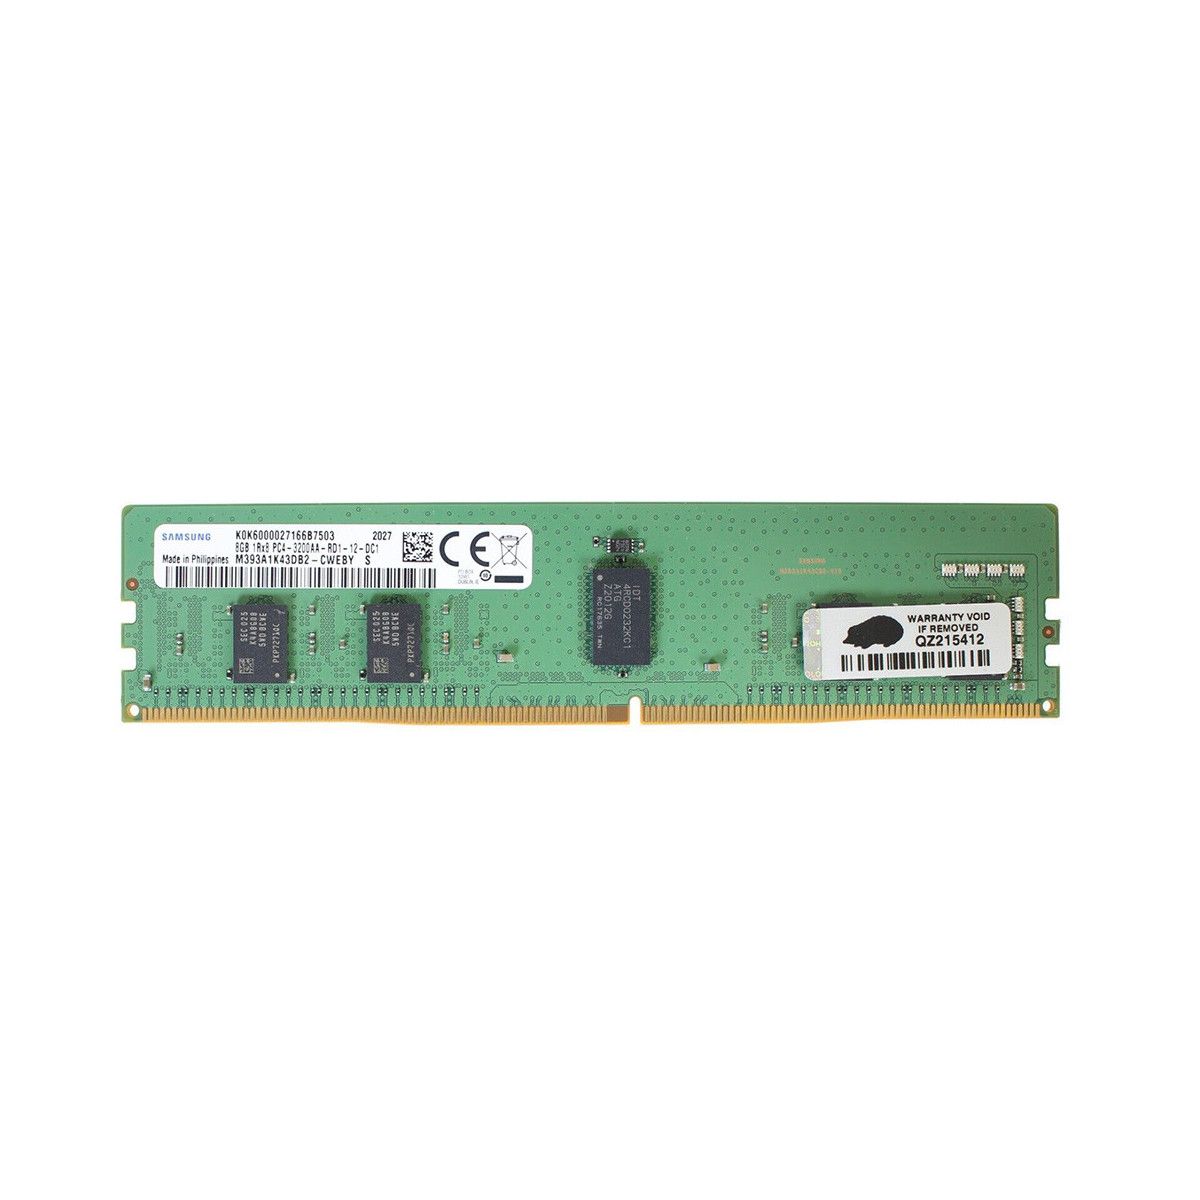 AA810825-MS - Memstar 1x 8GB DDR4-3200 RDIMM PC4-25600R - Memorie OEM compatibilă Mem-Star 1 - Memstar 